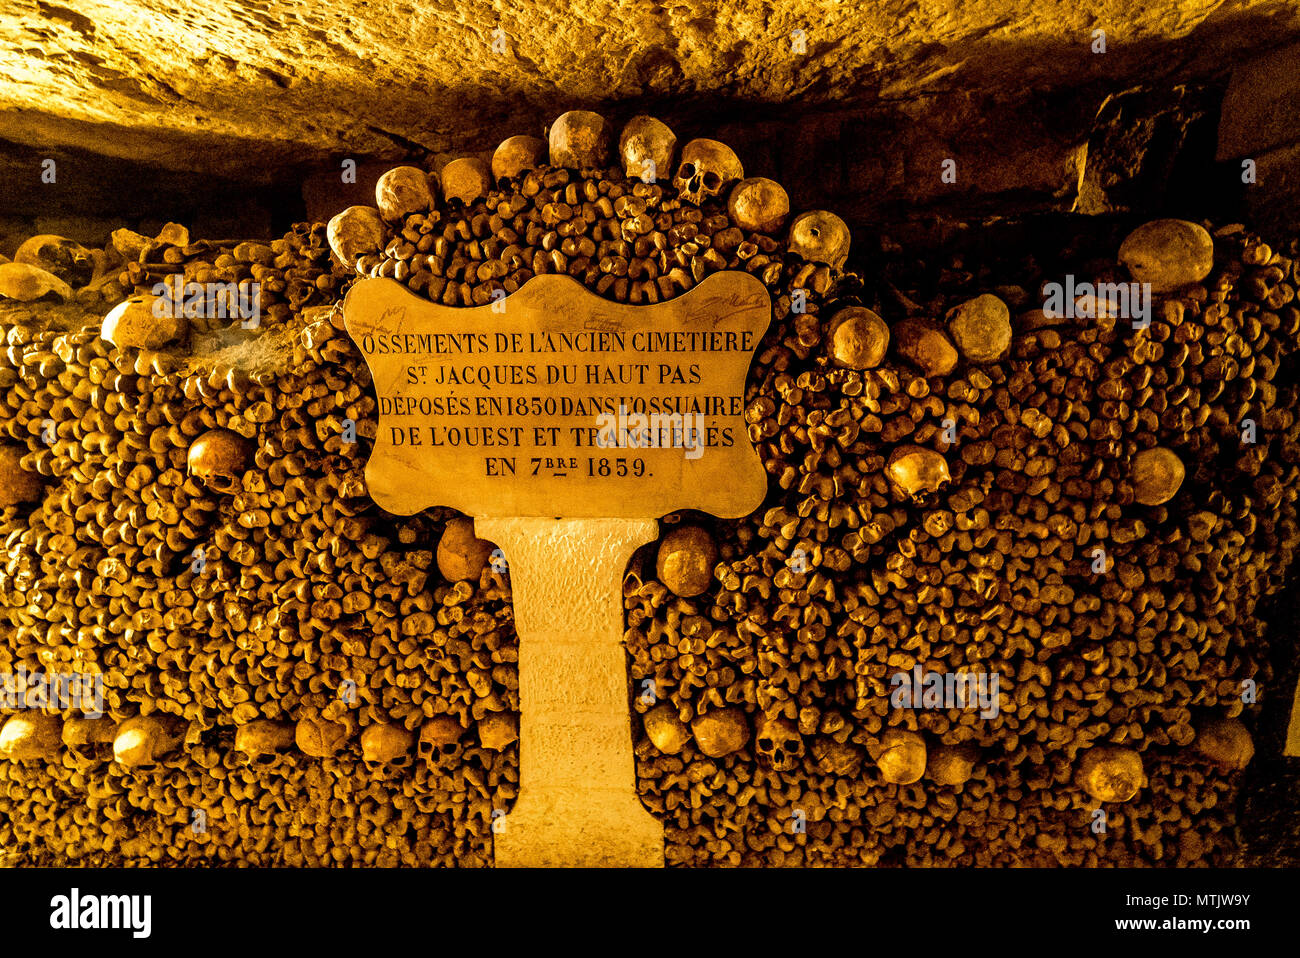 Die makabere Welt der Pariser Katakomben gefüllt mit skelettresten sorgt für eine sehr außergewöhnliche touristische Attraktion Stockfoto